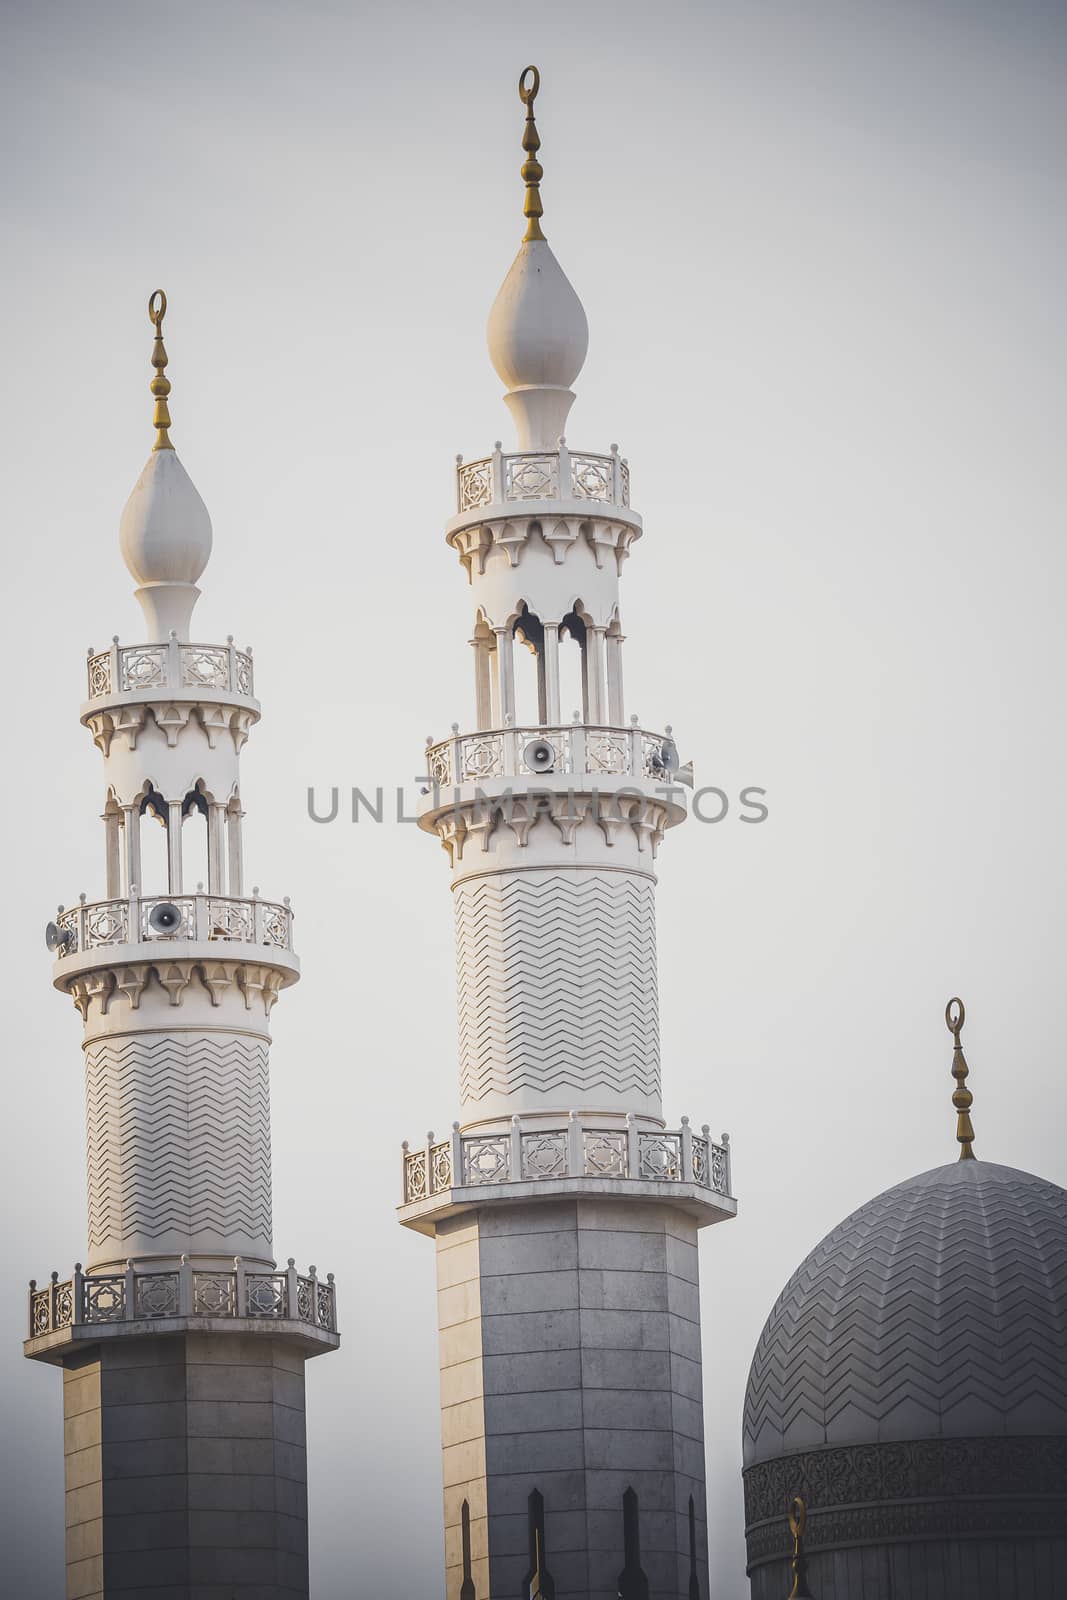 Mosque in Dubai by mariusz_prusaczyk